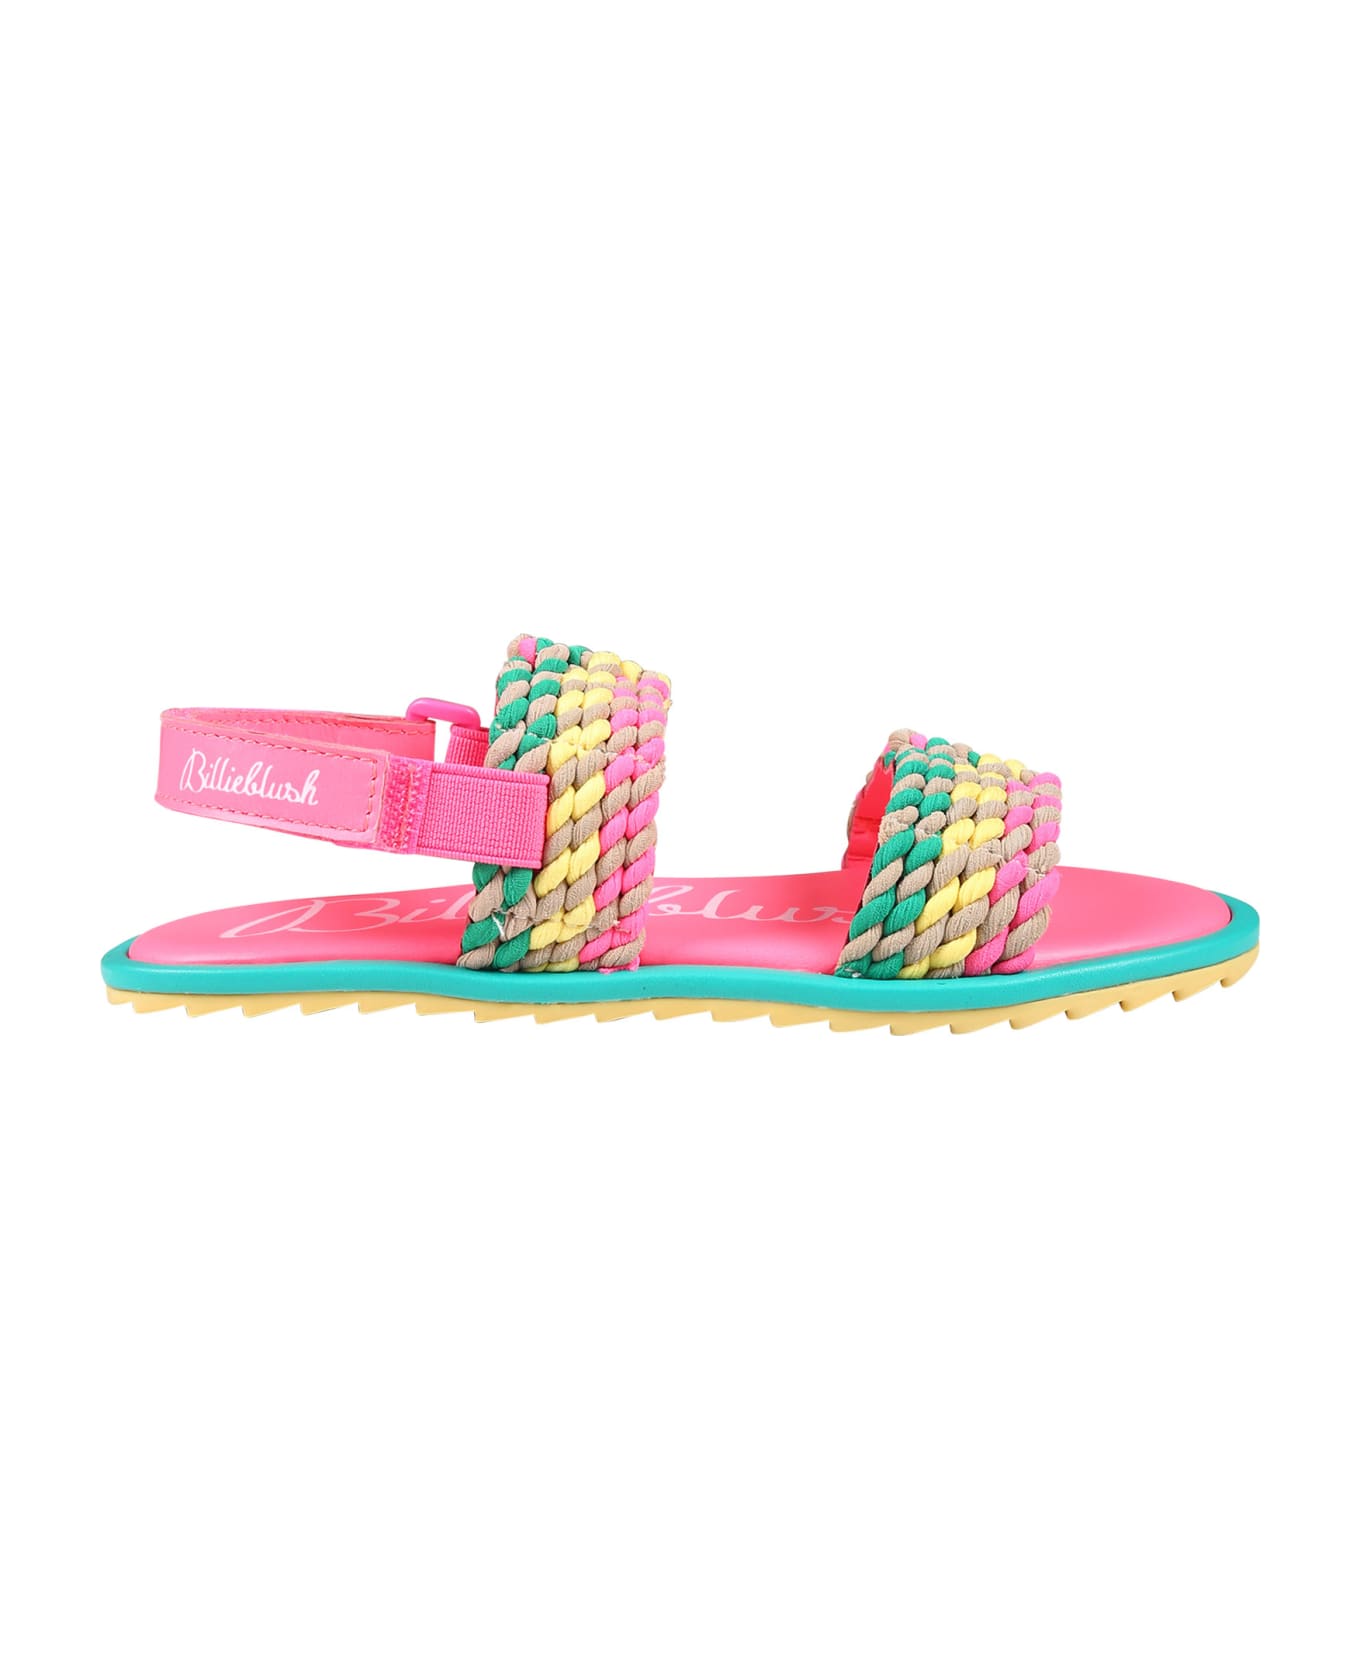 Billieblush Multicolor Sandals For Girl - Multicolor シューズ